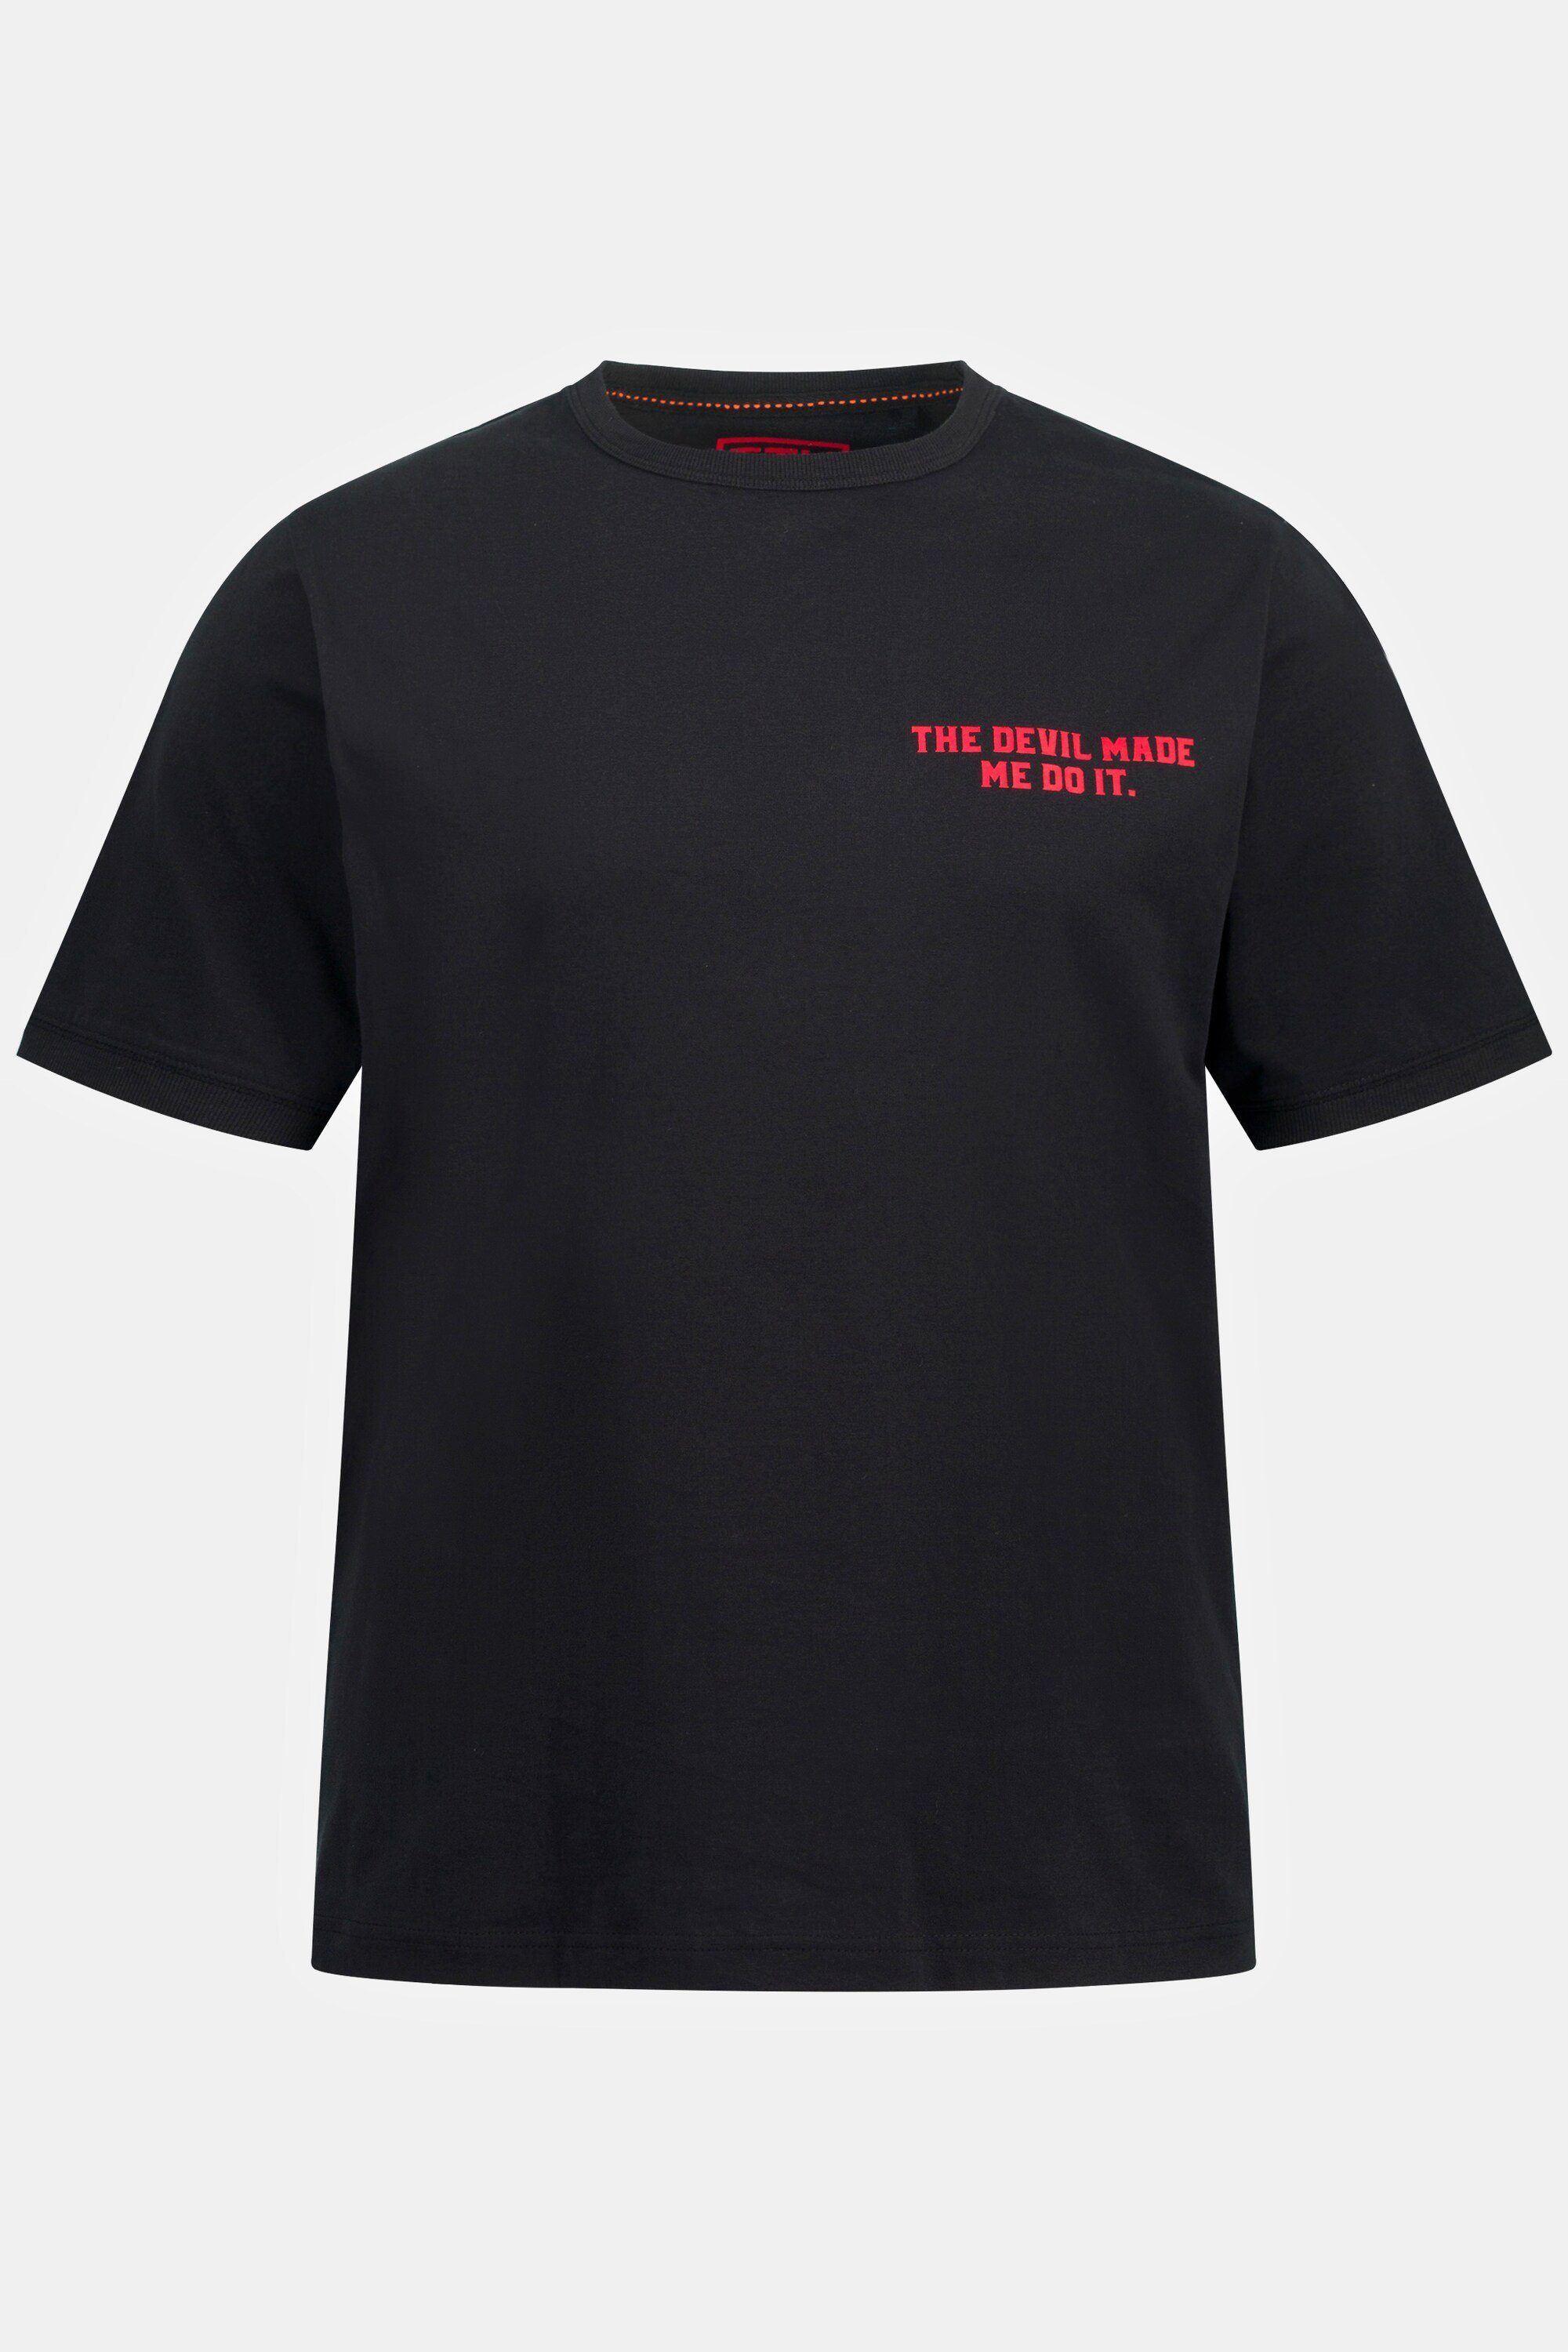 Rücken Print STHUGE STHUGE T-Shirt Brust T-Shirt und Rundhals